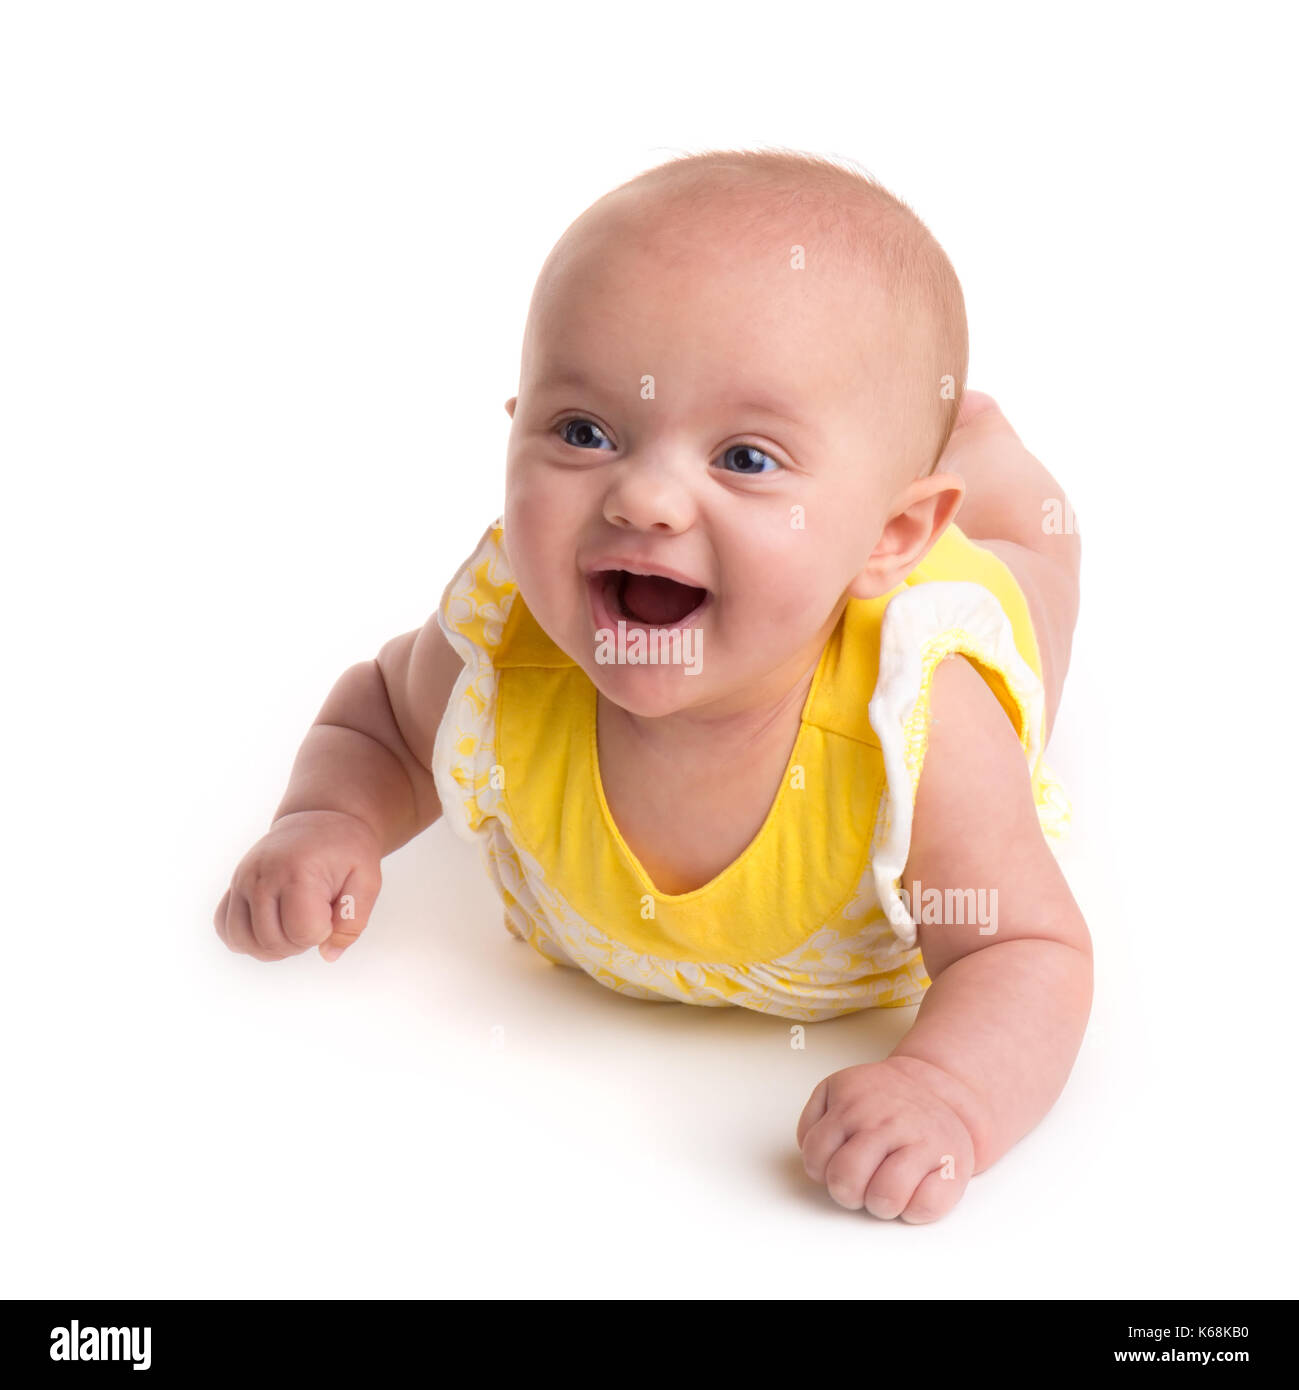 Carino baby sorridente isolati su sfondo bianco Foto Stock